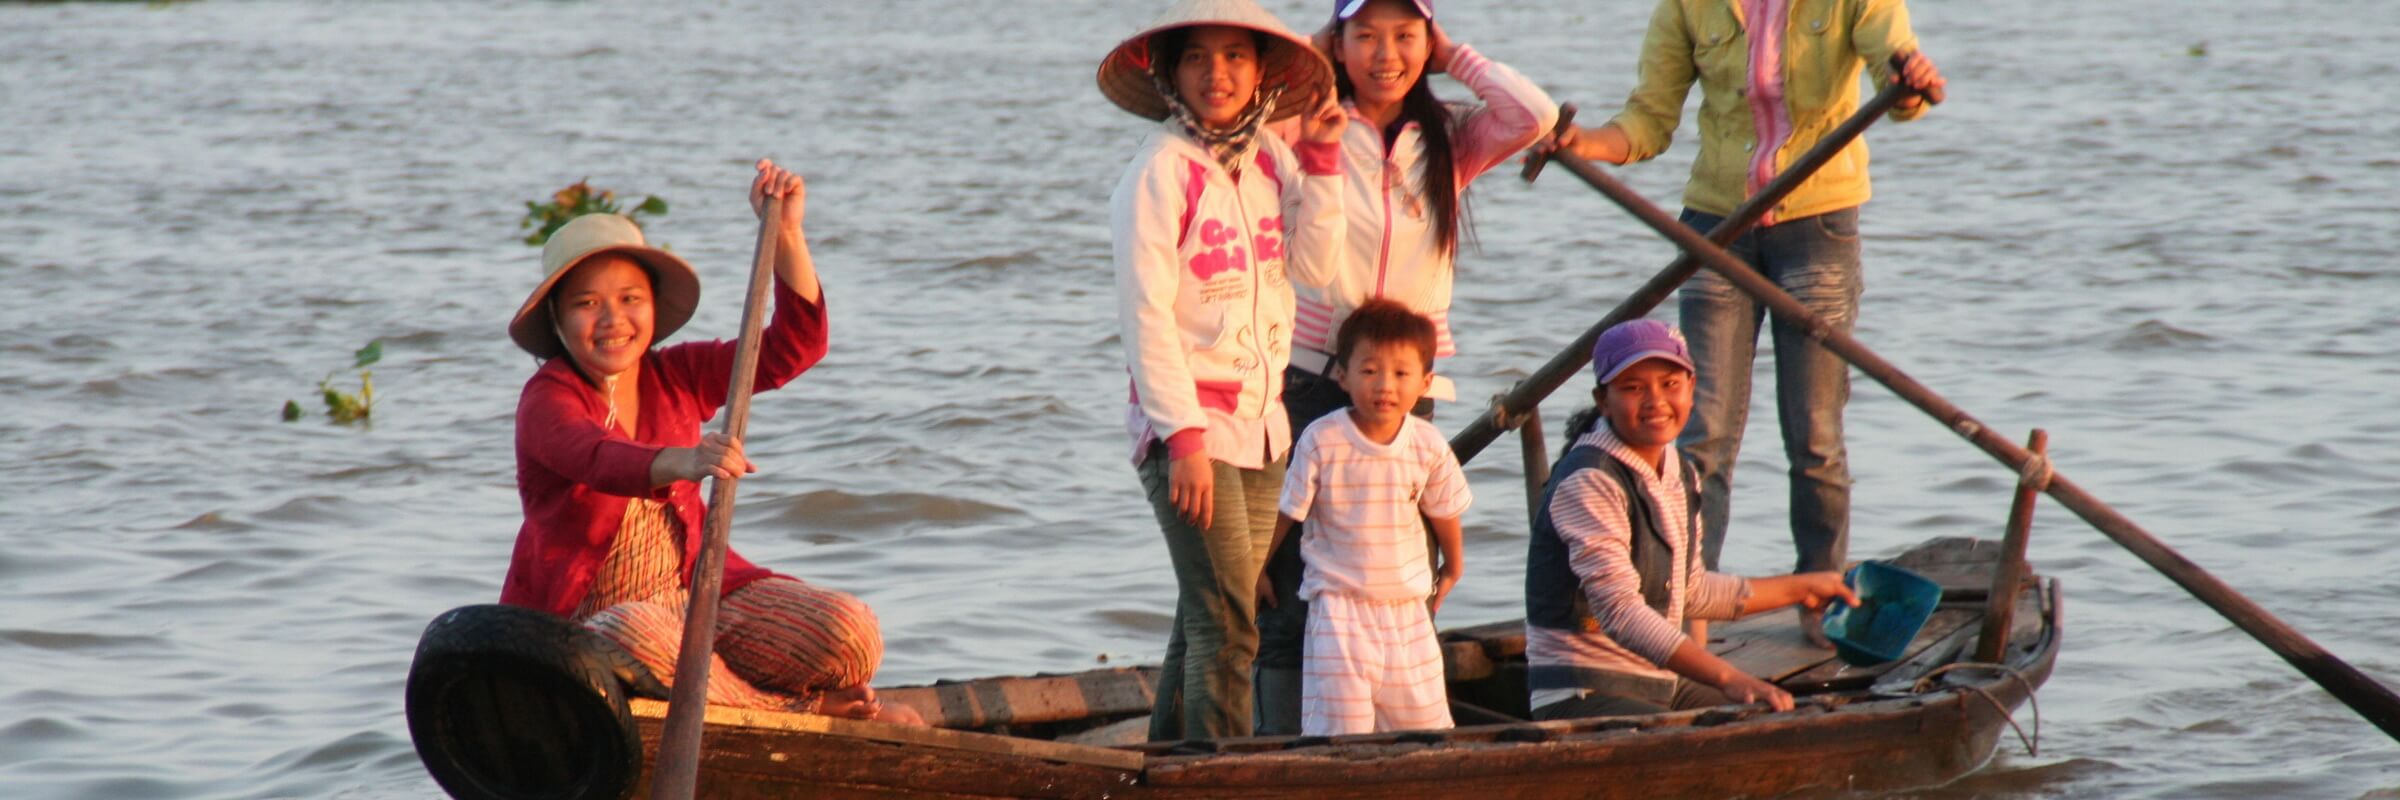 Die sogenannten Sampans sind  flache breite Ruderboote und ein gängiges Fortbewegungsmittel im Mekong Delta.